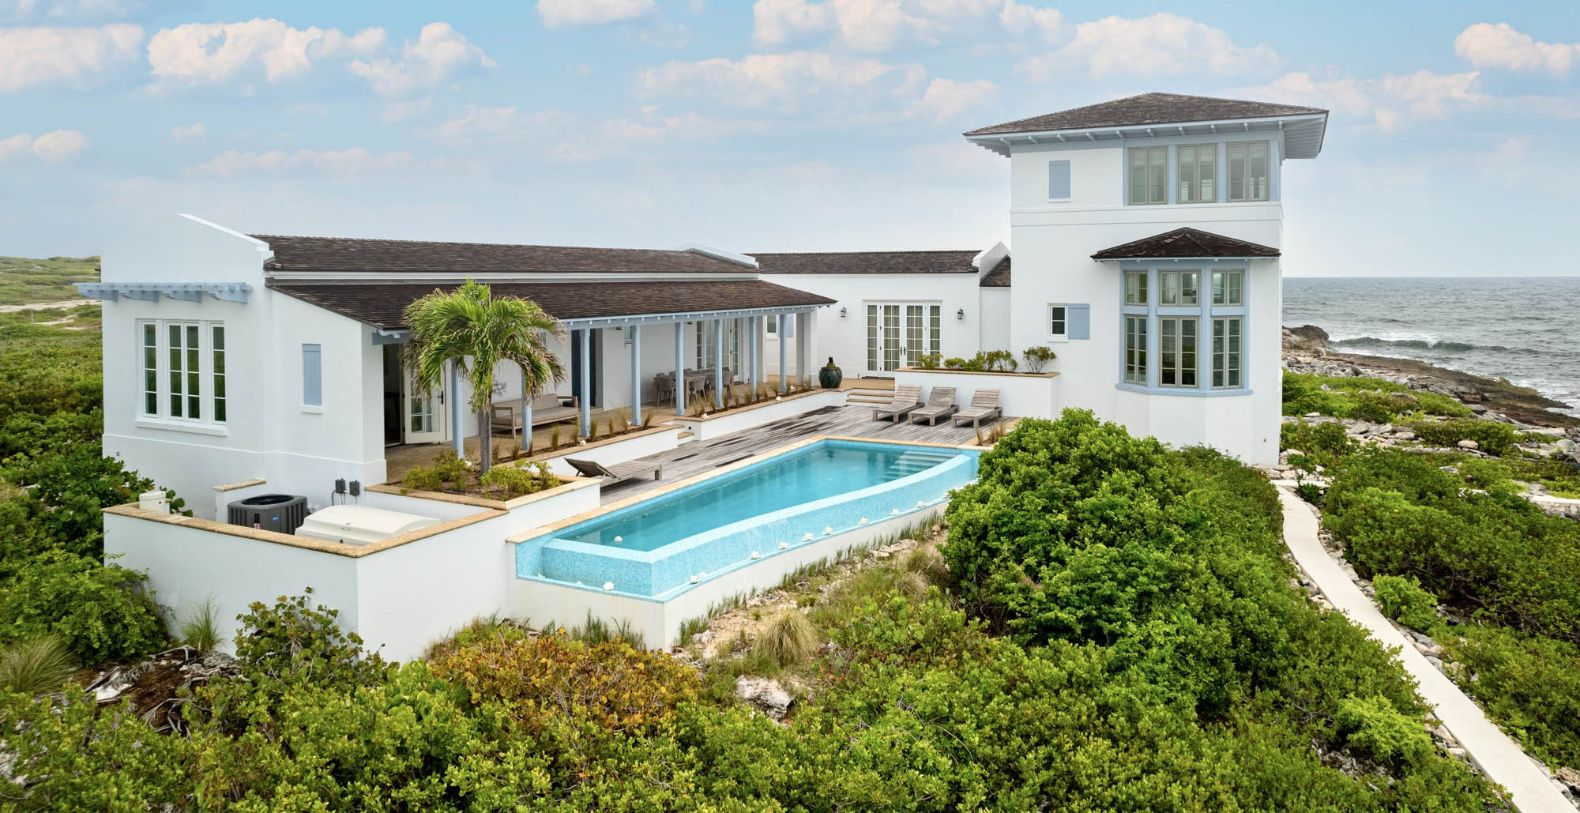 Land's End Turks & Caicos Villa Rentals